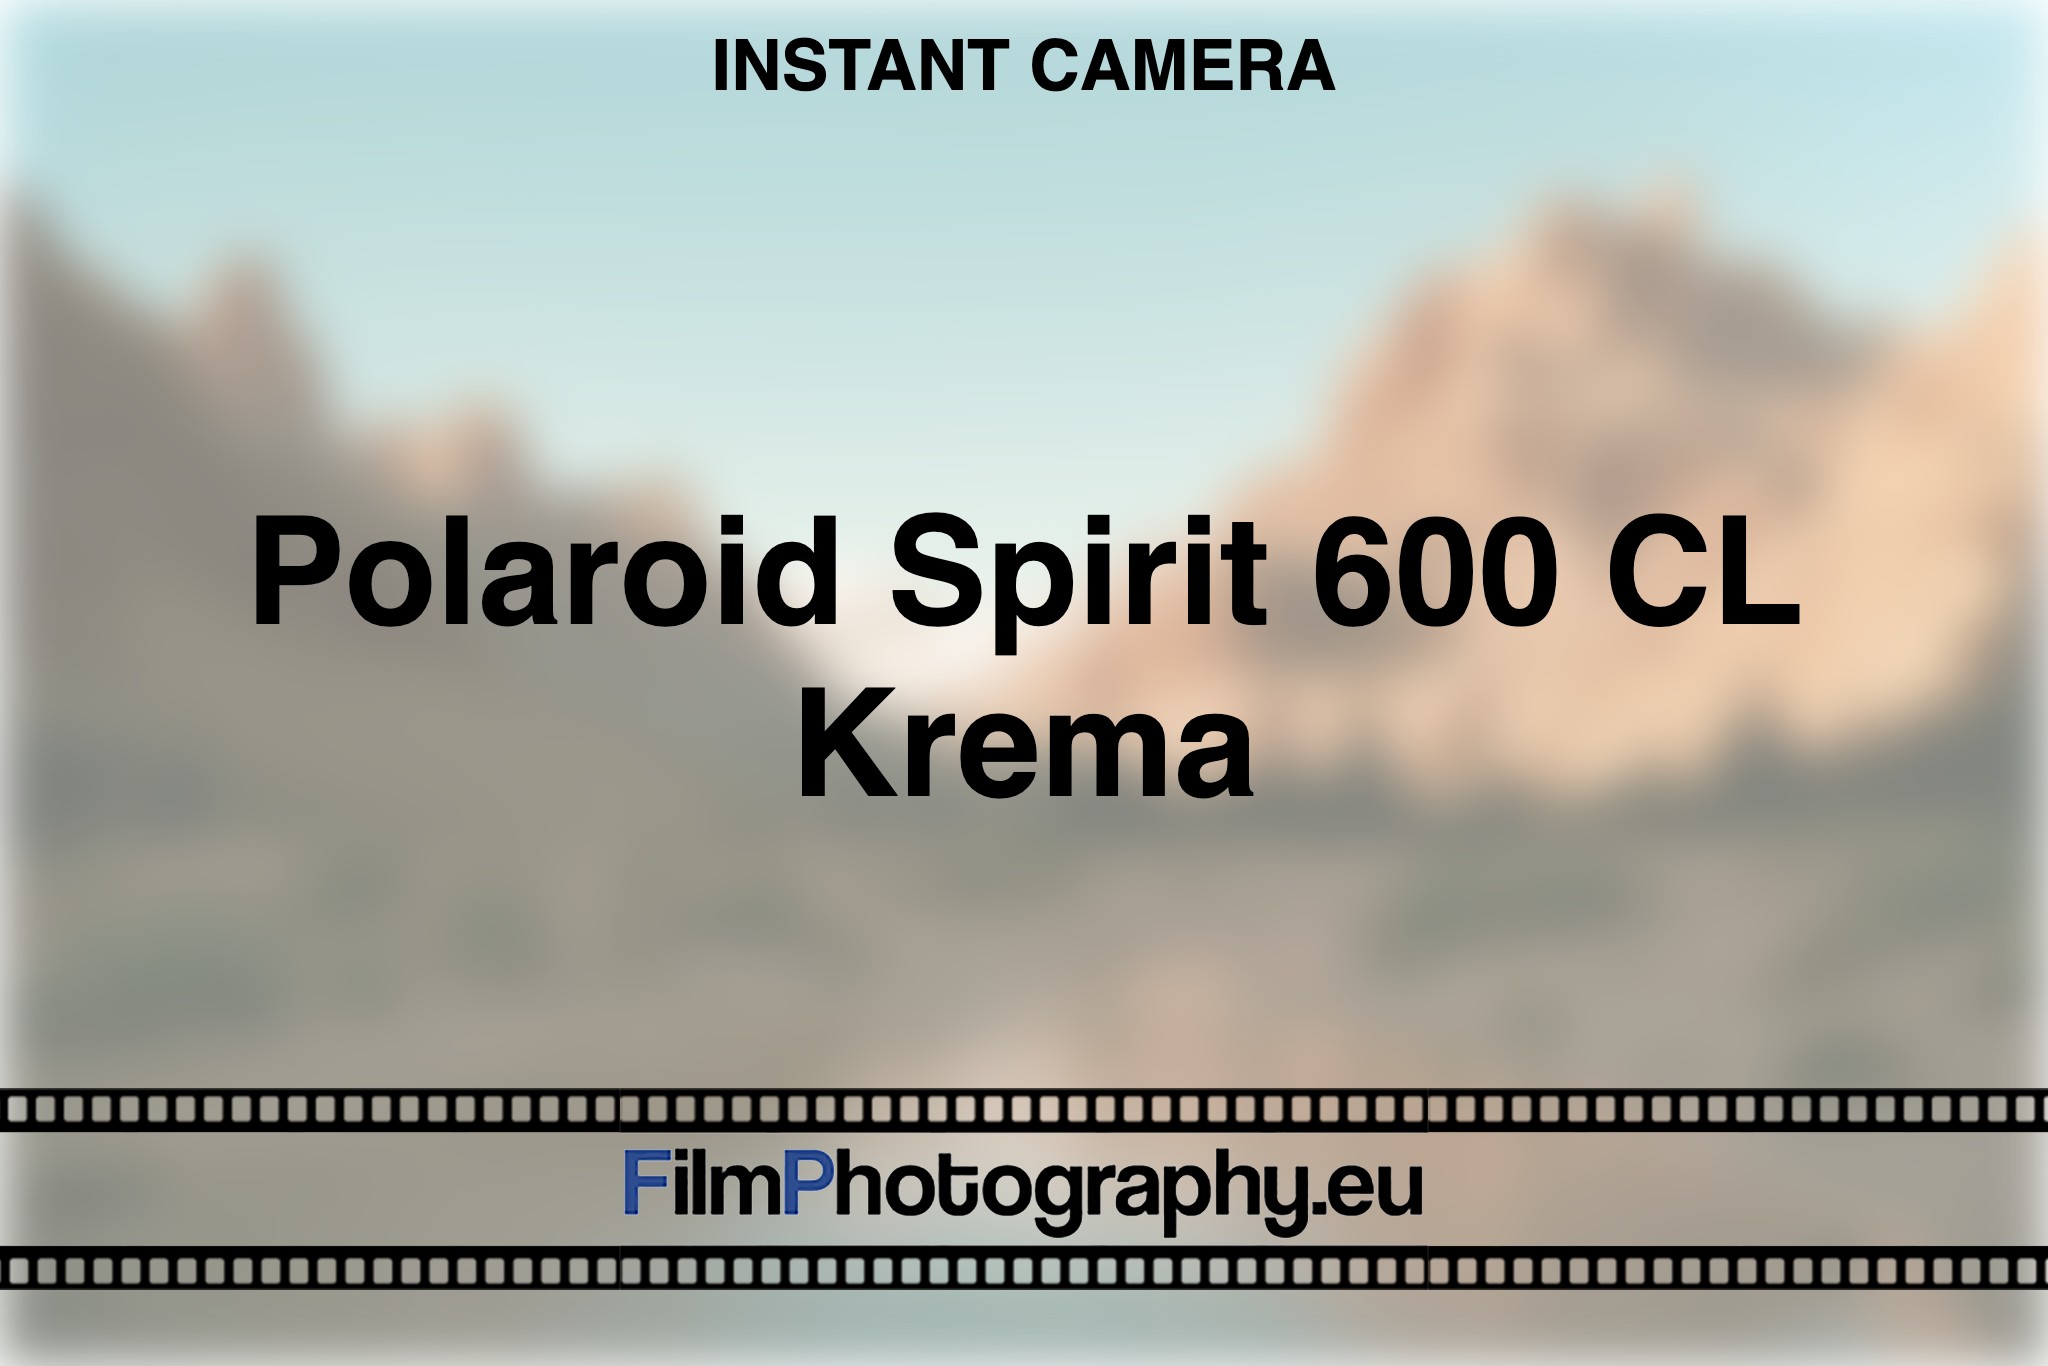 polaroid-spirit-600-cl-krema-instant-camera-bnv